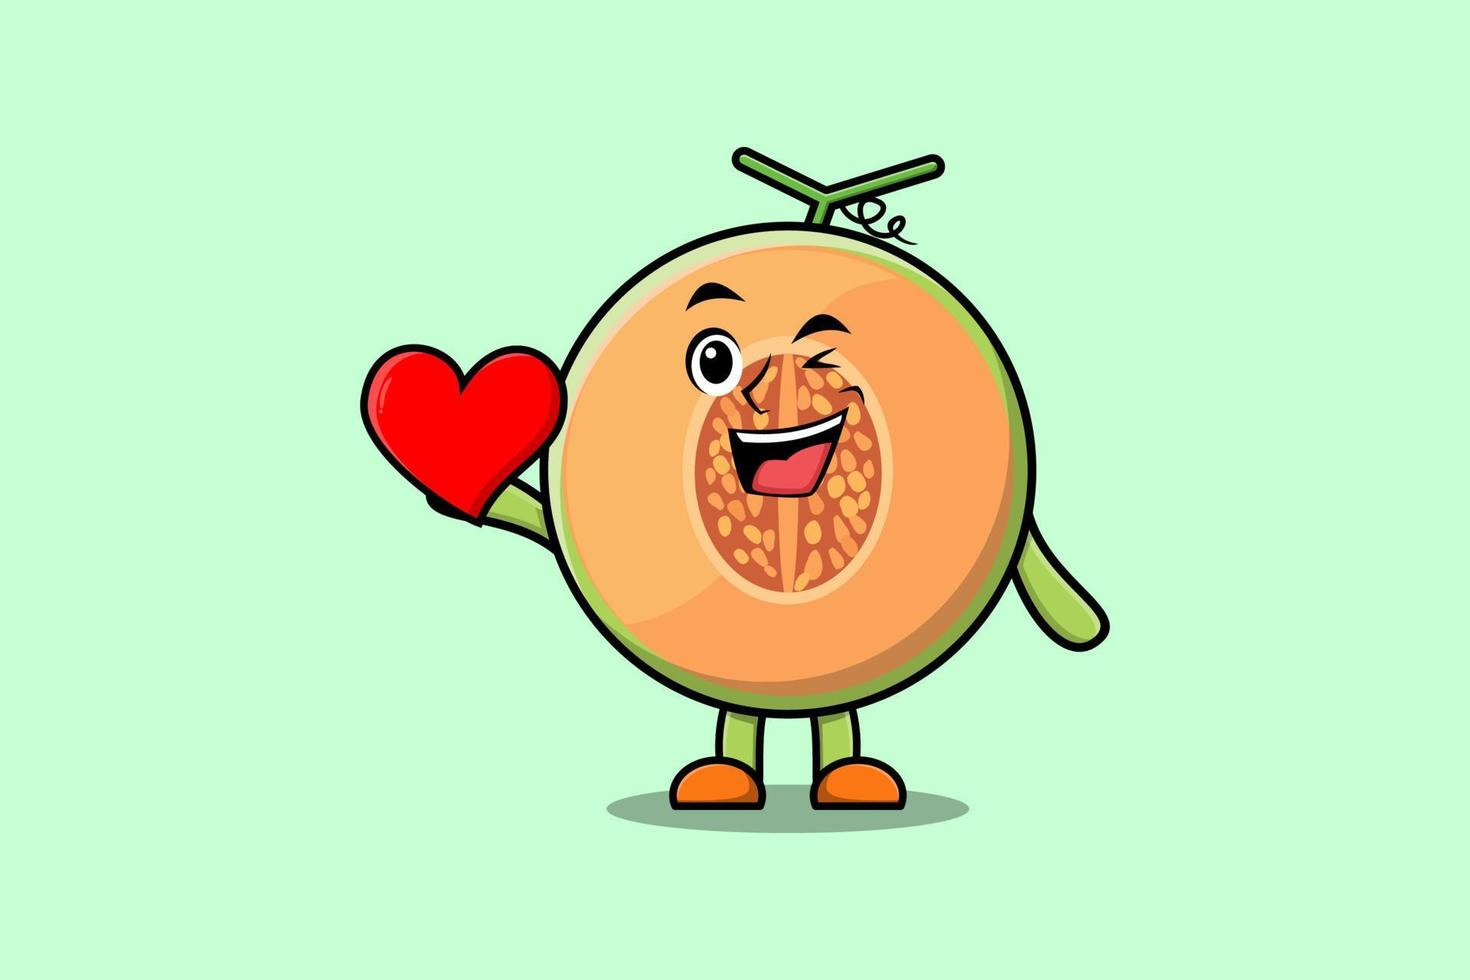 personnage de dessin animé mignon melon tenant un grand coeur rouge vecteur